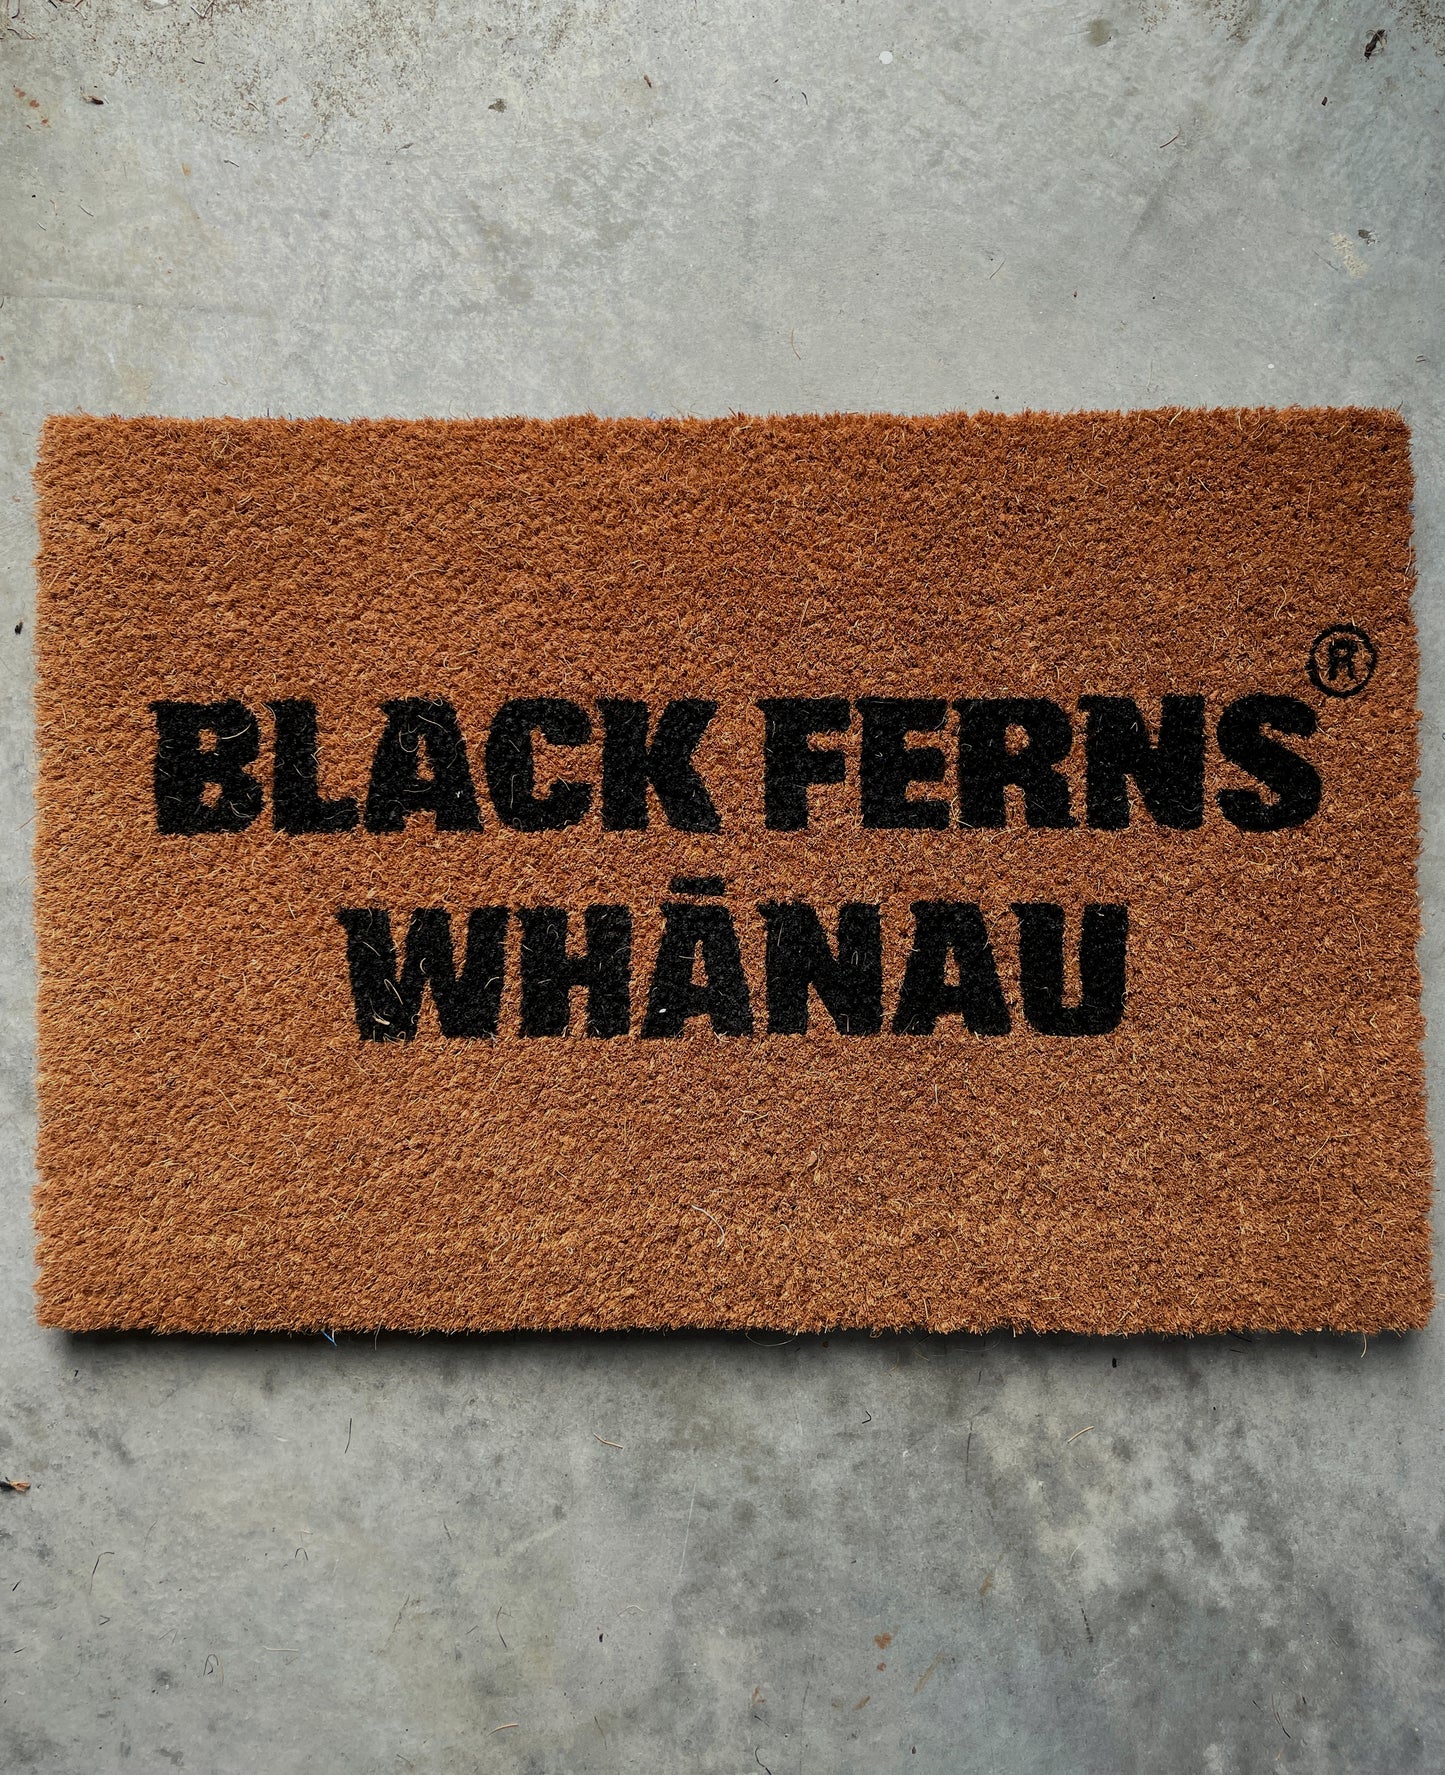 Black Ferns Whanau doormat